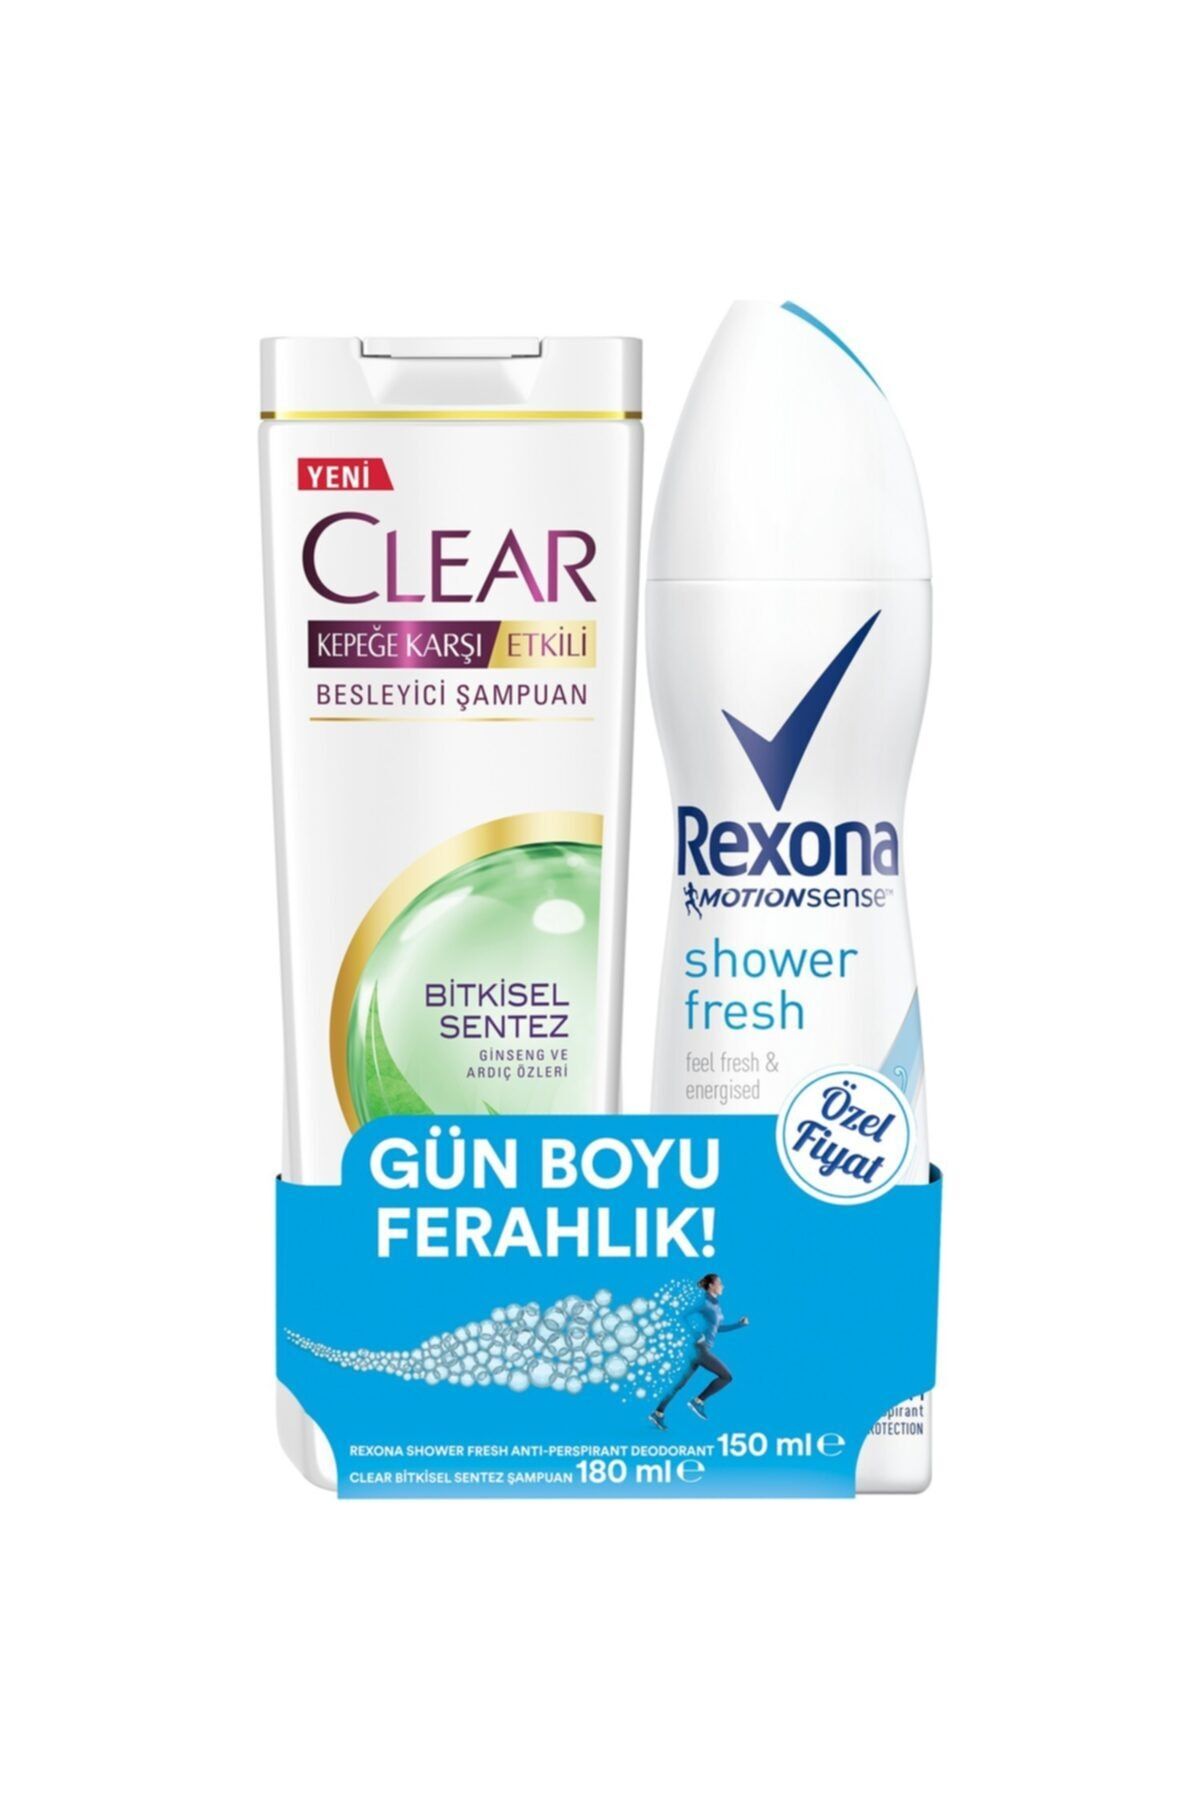 Rexona Shower Fresh Deodorant 150 Ml. Clear Bitkisel Sentez Şampuan 180 Ml. * ( 1 Adet )